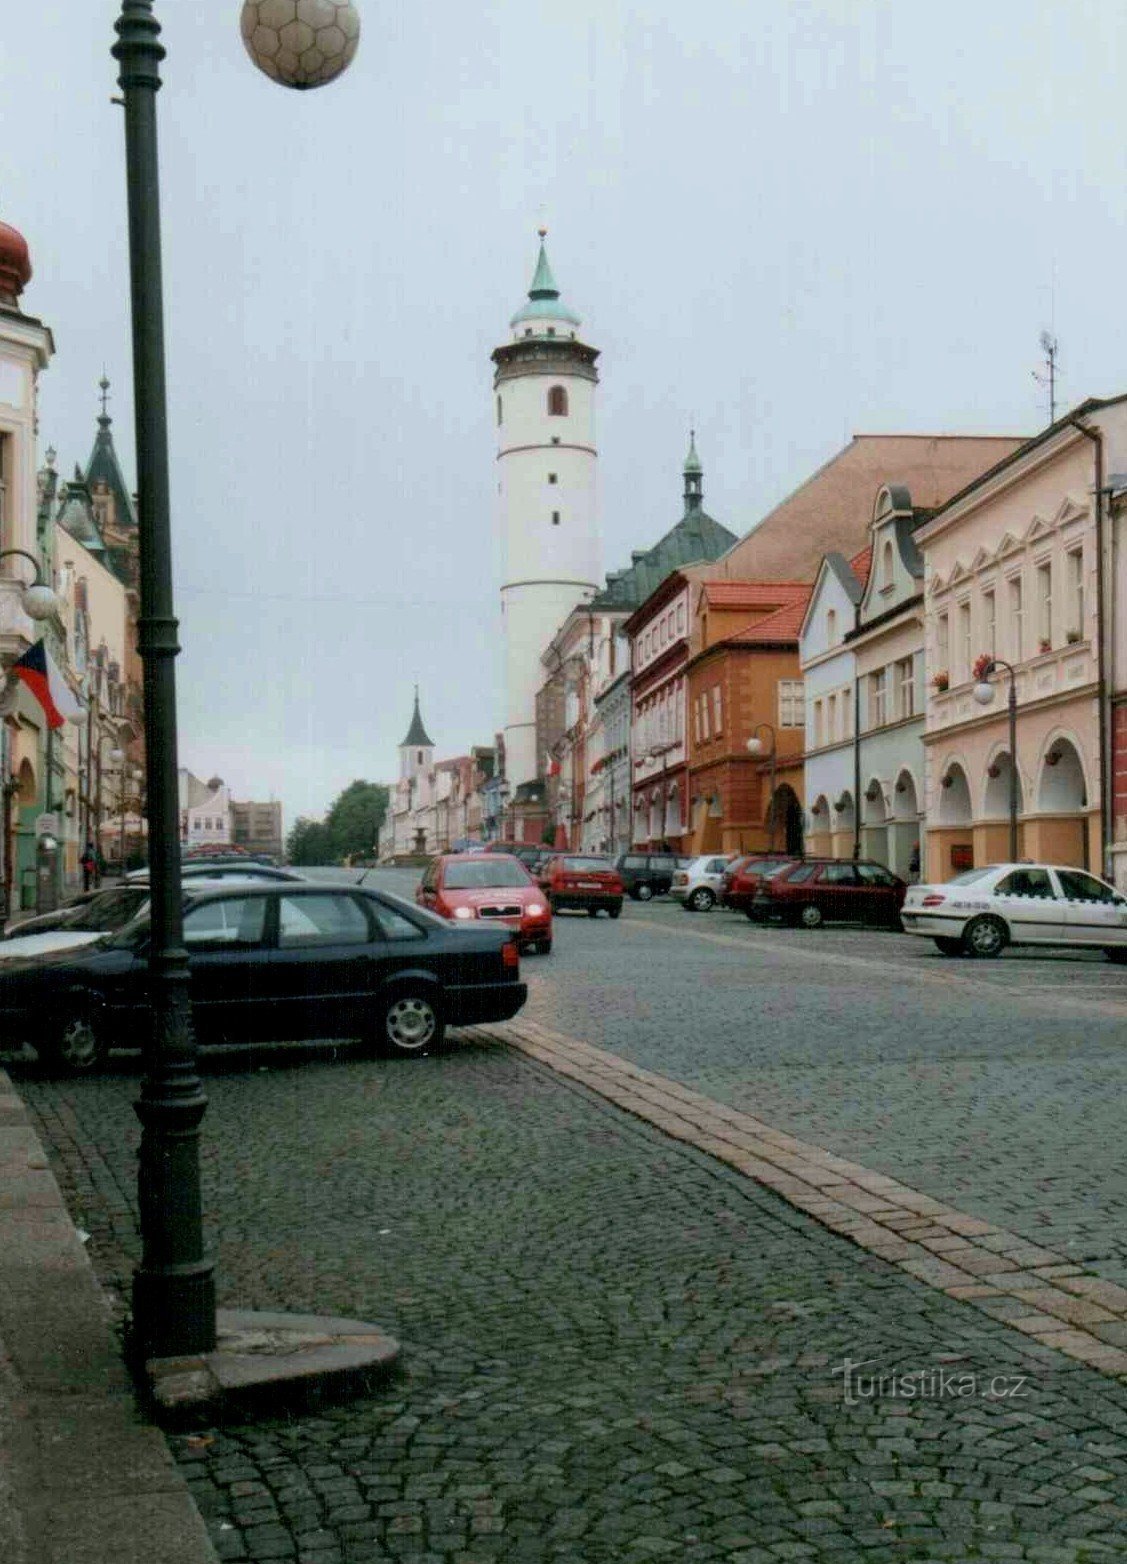 进一步证明 Domažlice 的塔是倾斜的